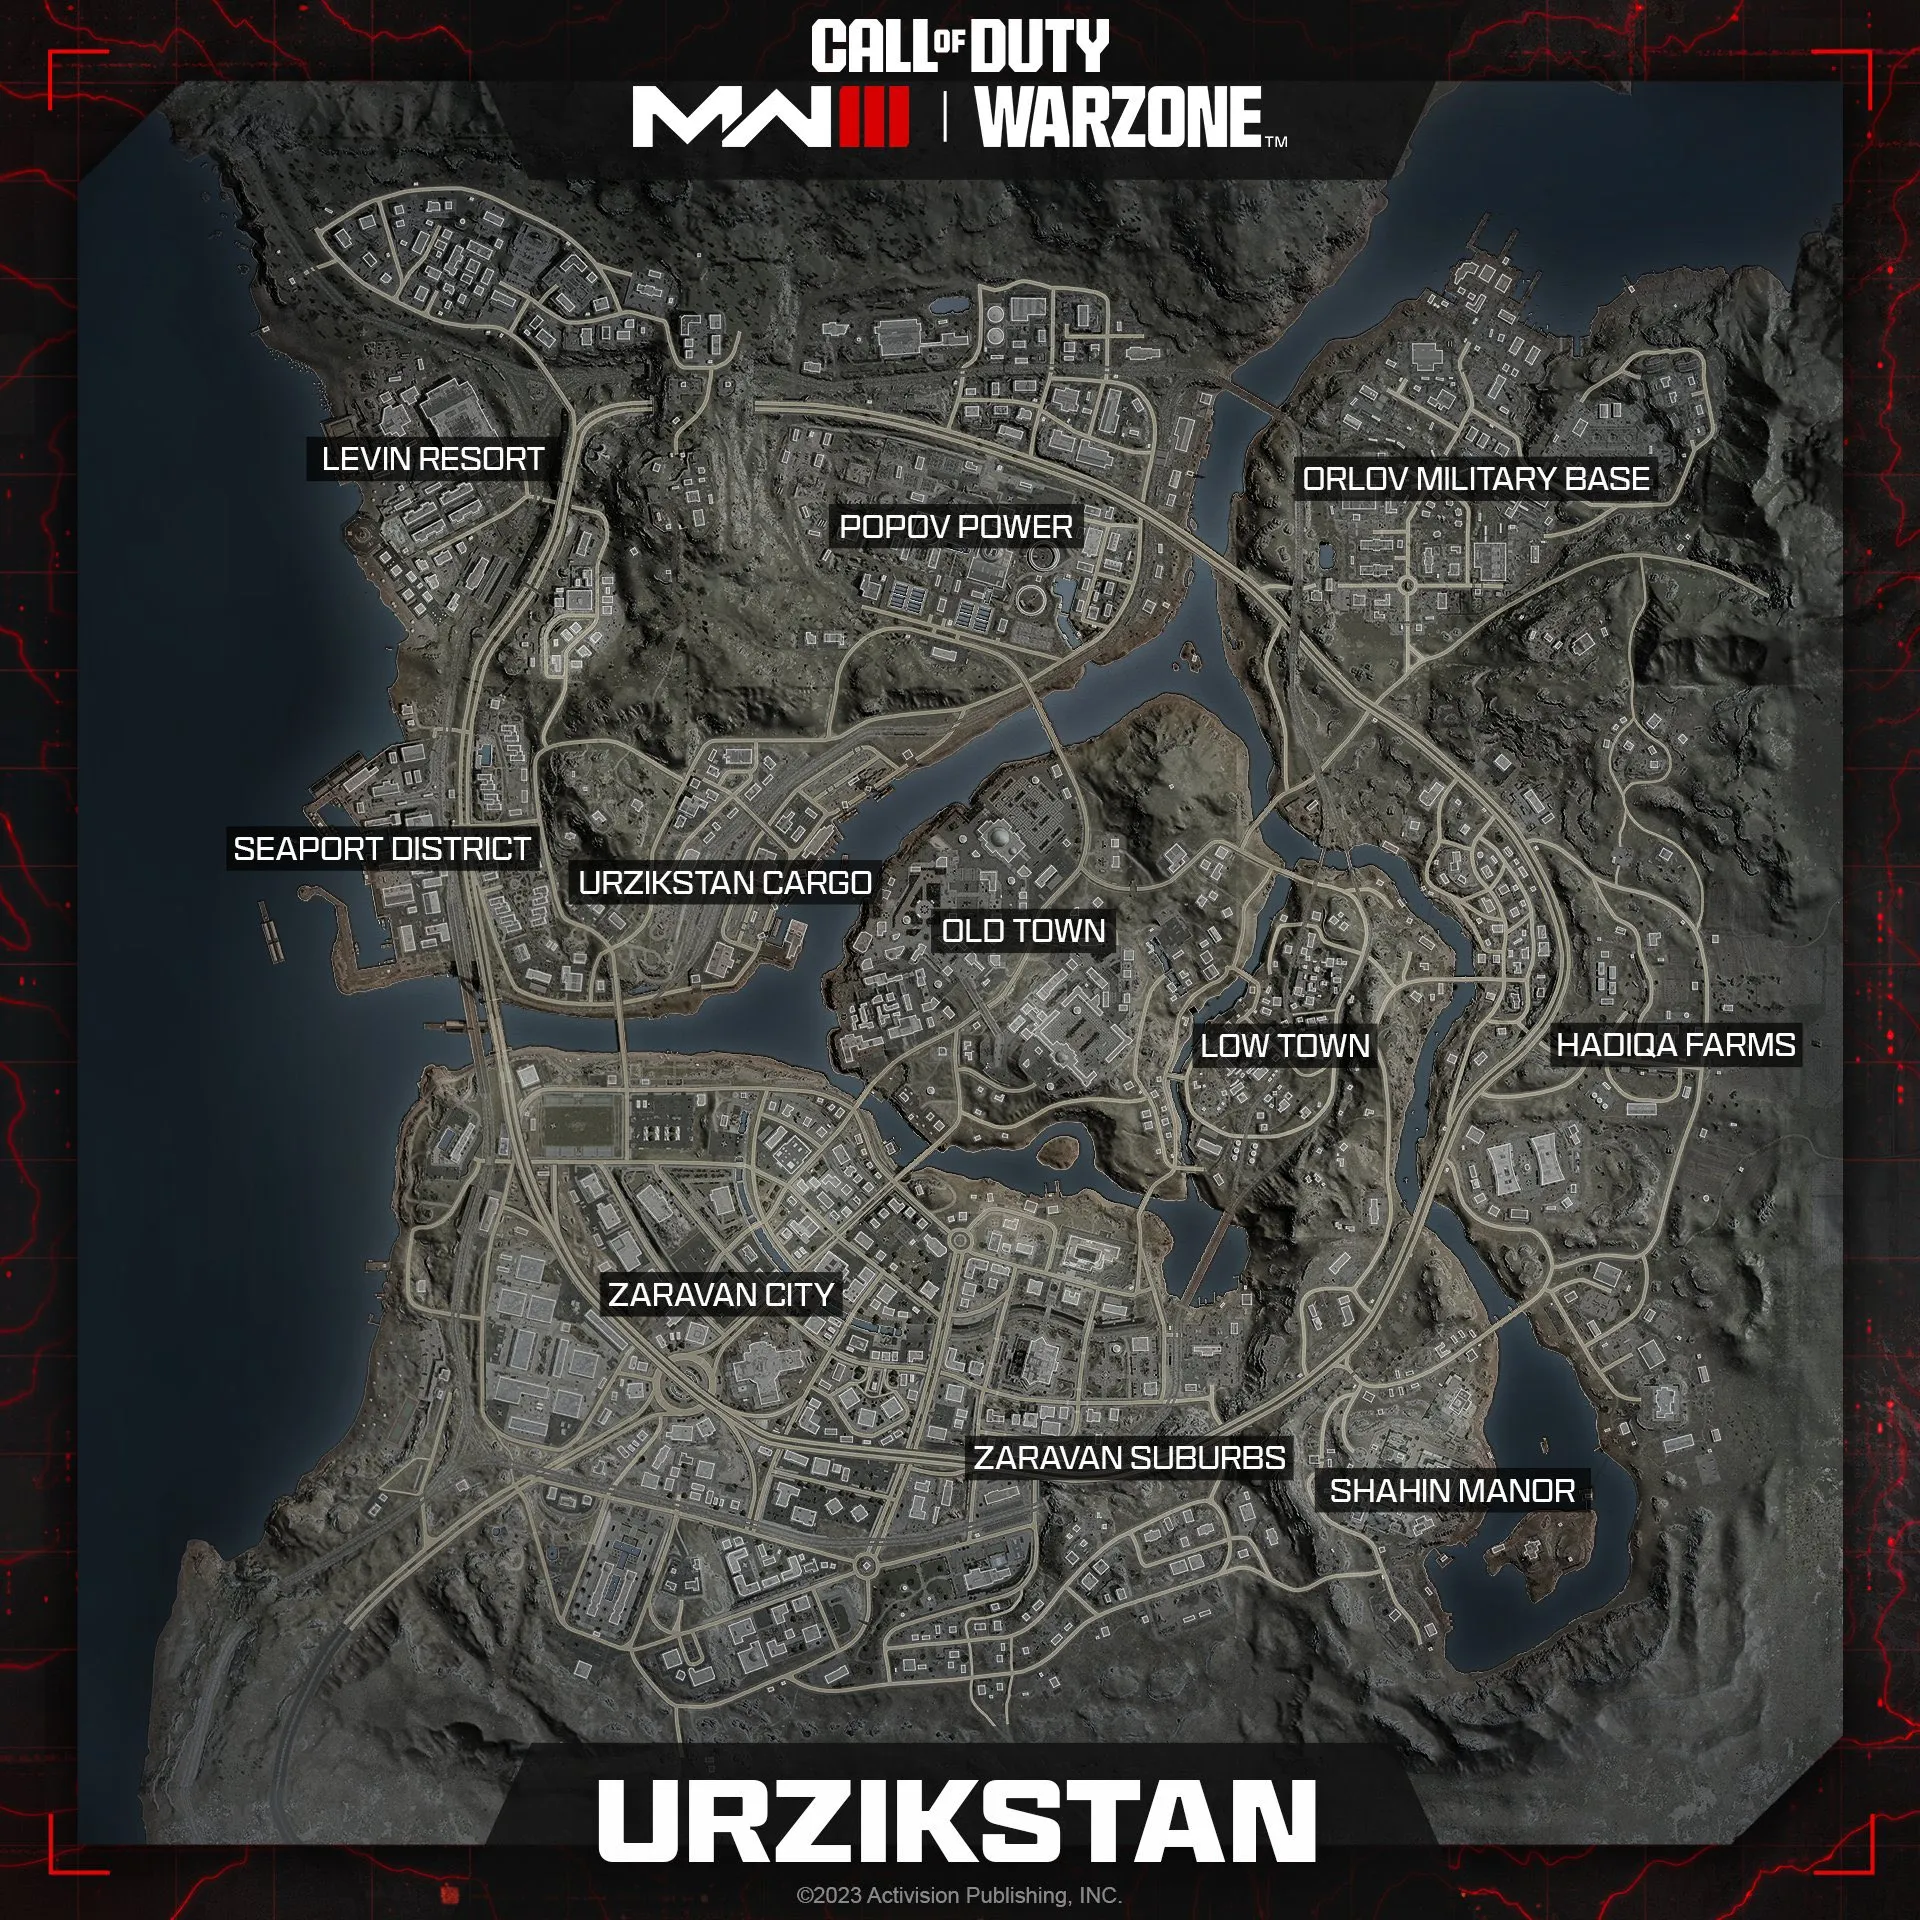 New Modern Warfare 3 Warzone Map Urzikstan Revealed POIs, Locations